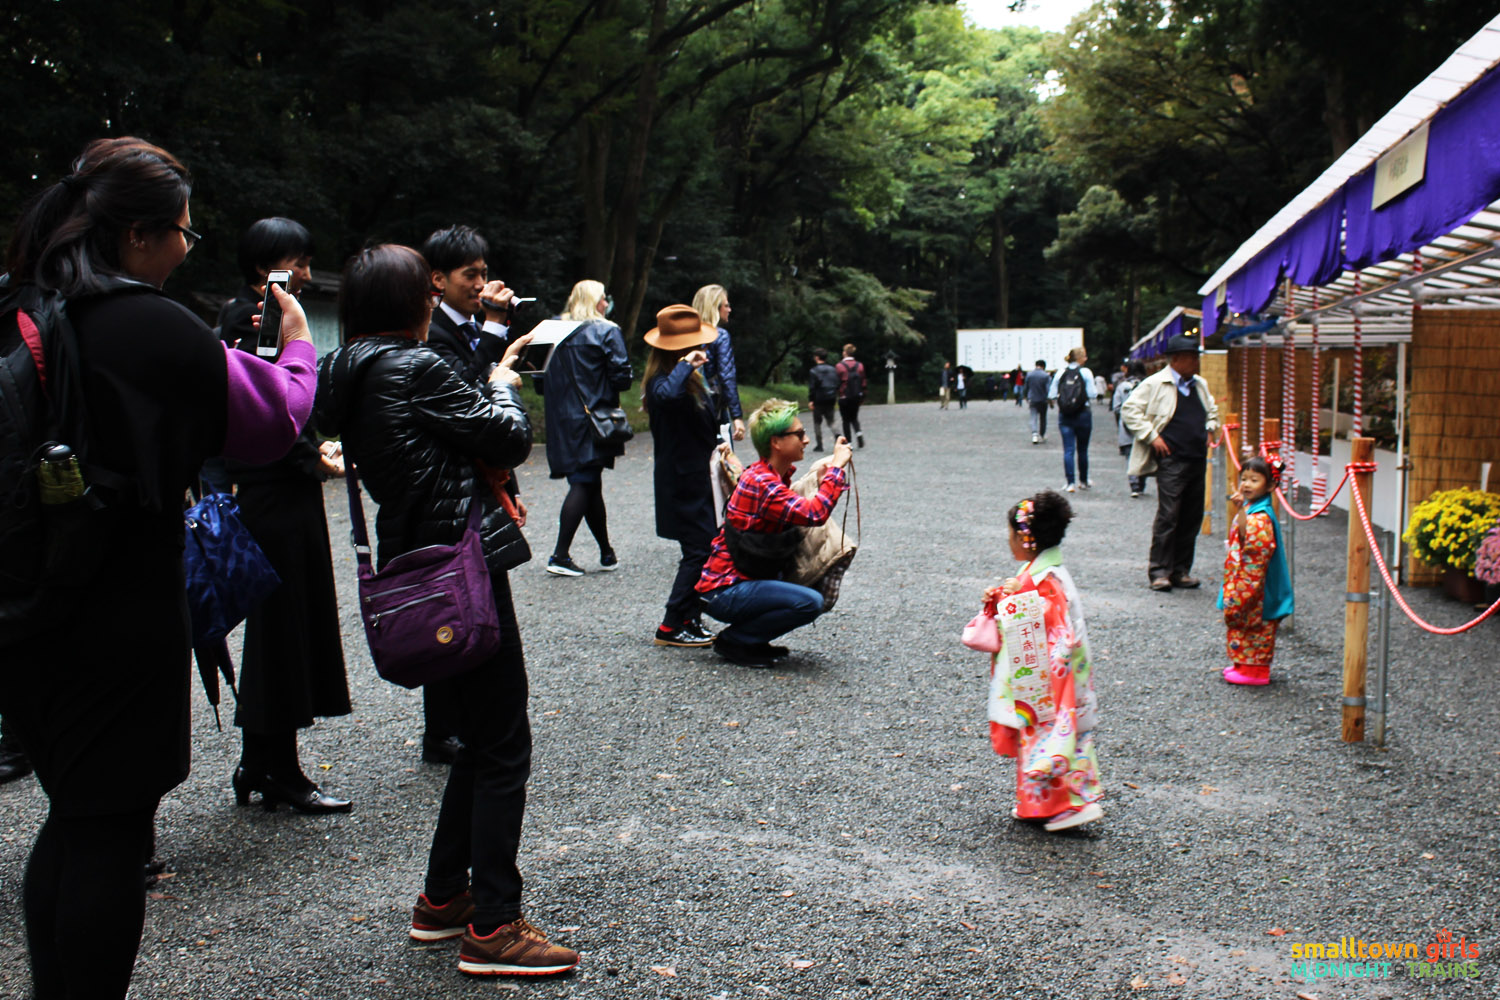 SGMT Japan Tokyo Meiji Shrine 08 children